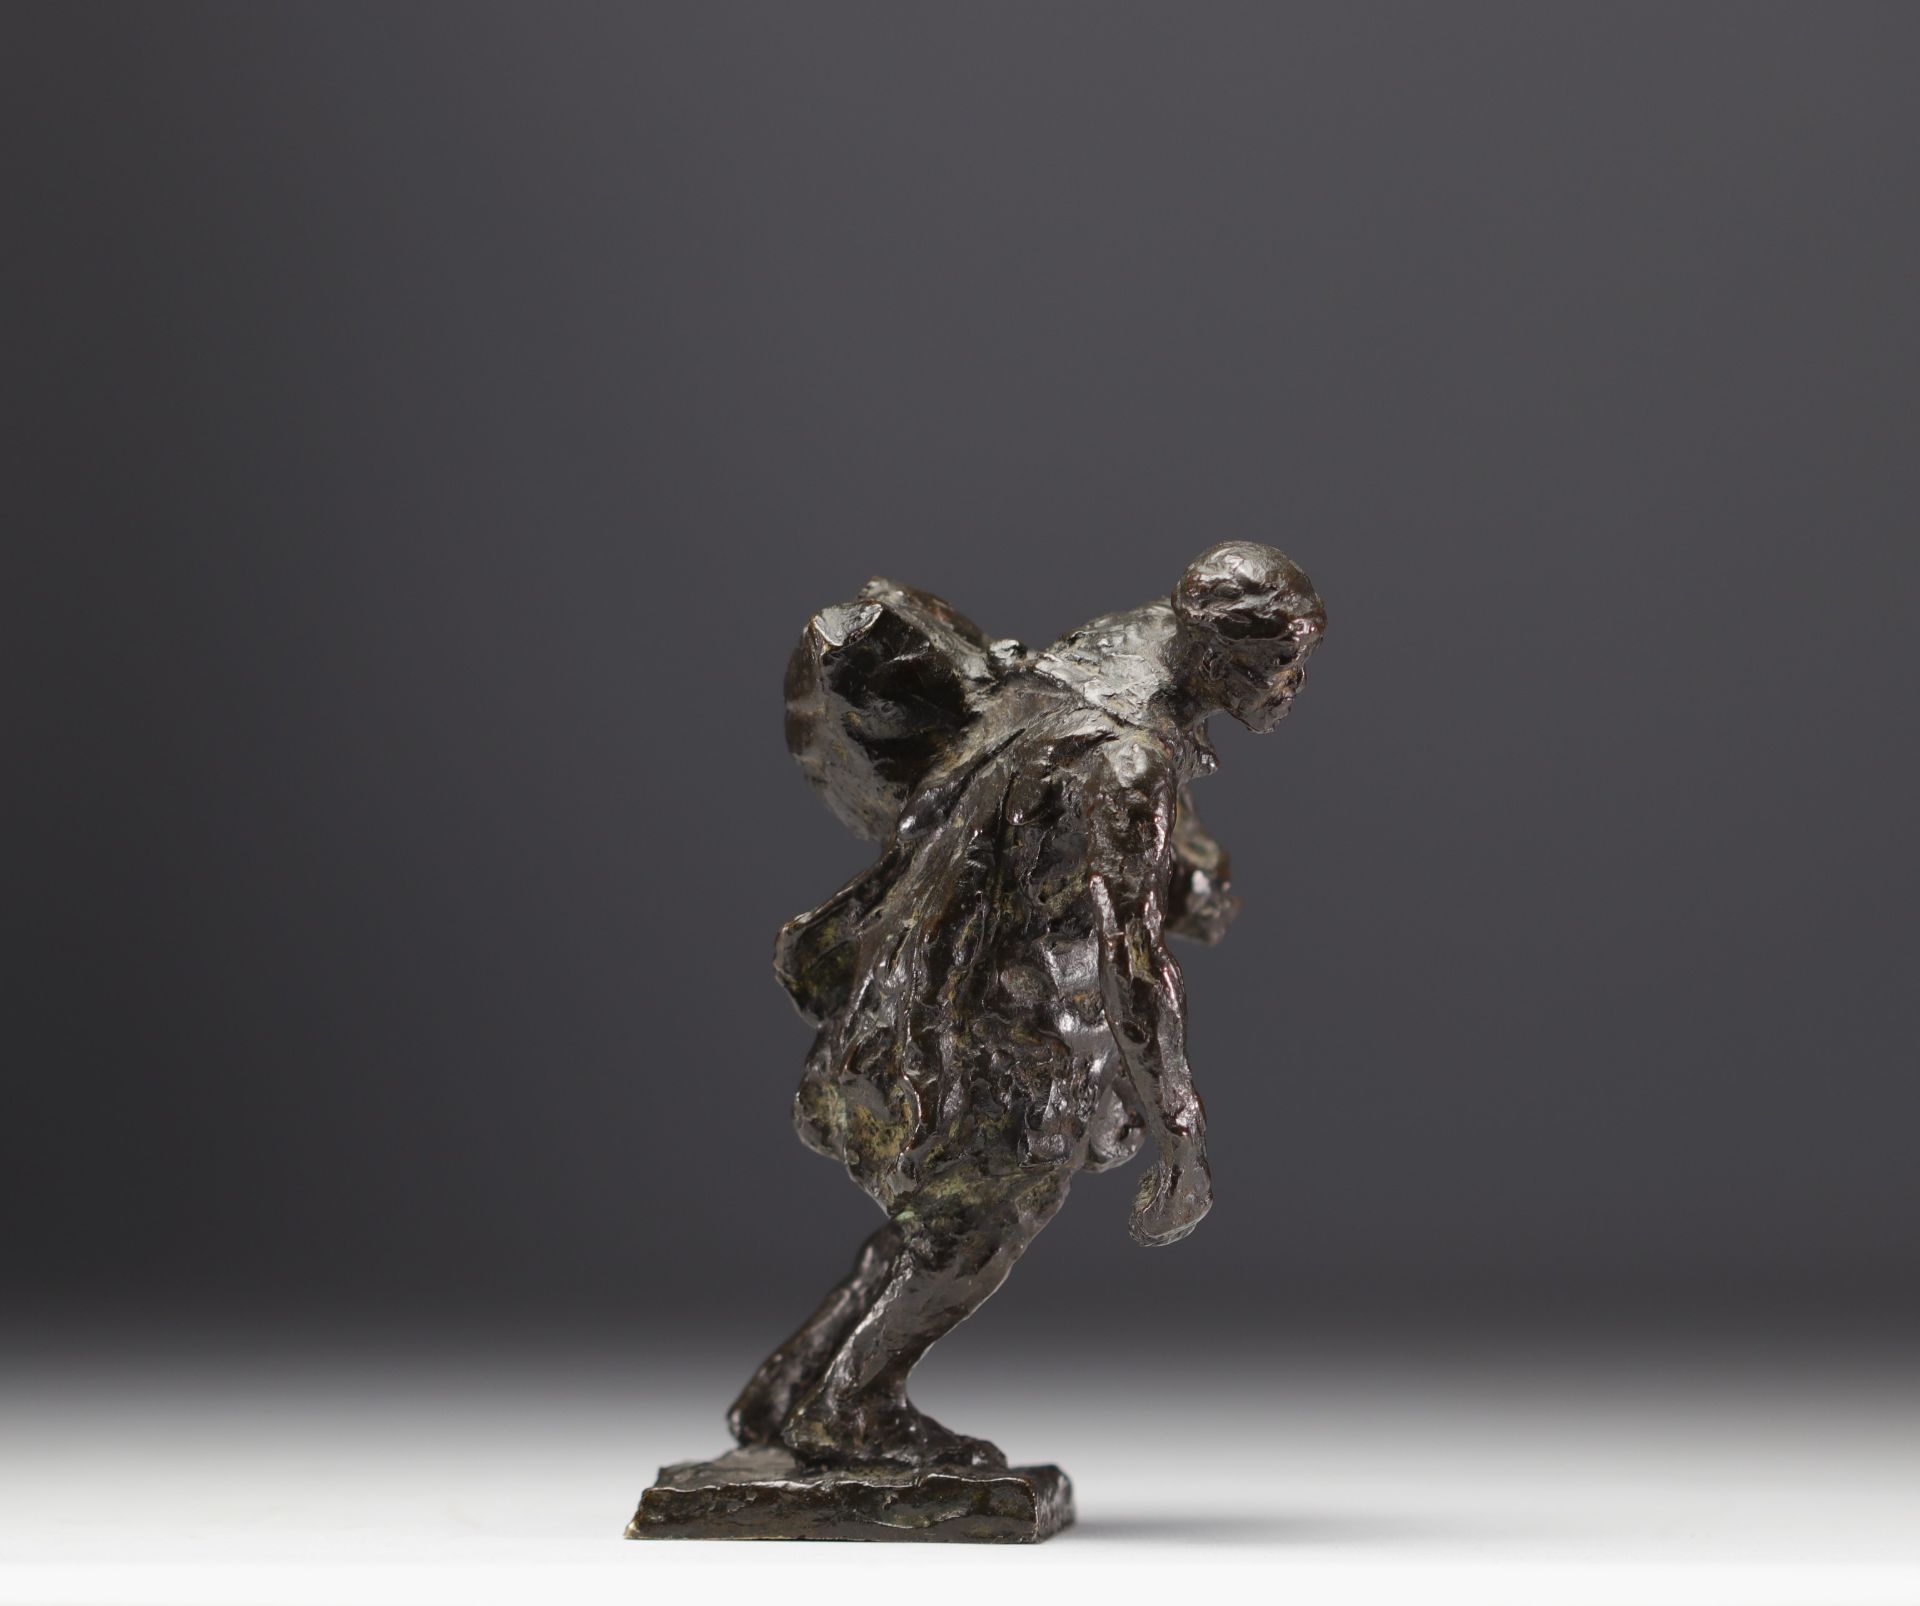 Gaston BROQUET (1880-1947) "The bag bearer" Orientalist bronze. - Image 2 of 5